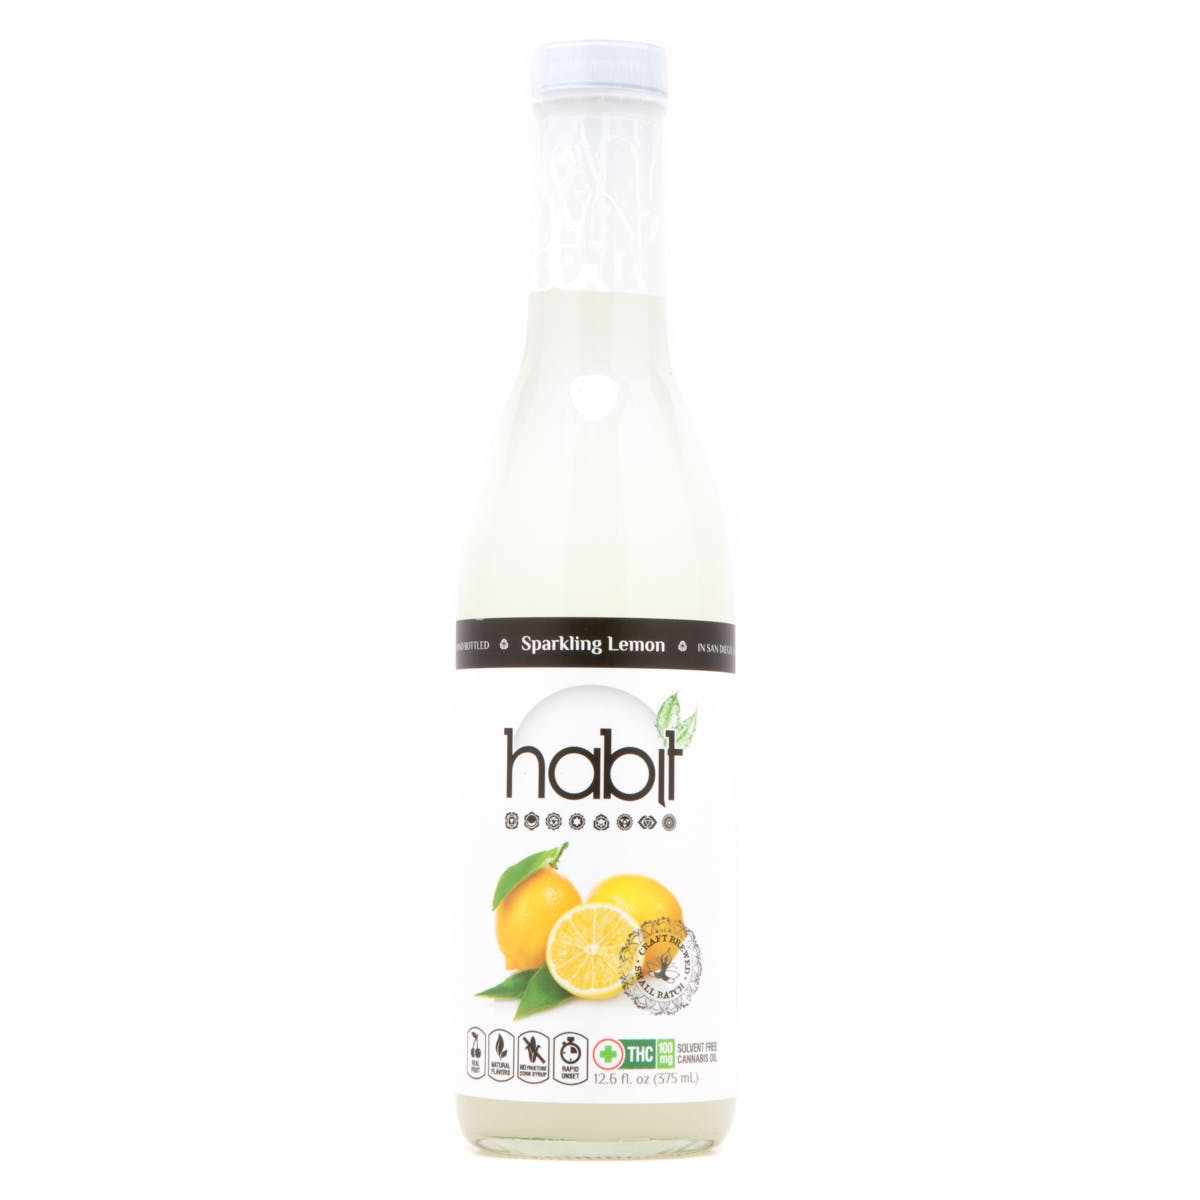 Habit Sparkling Lemonade Beverage, 100mg